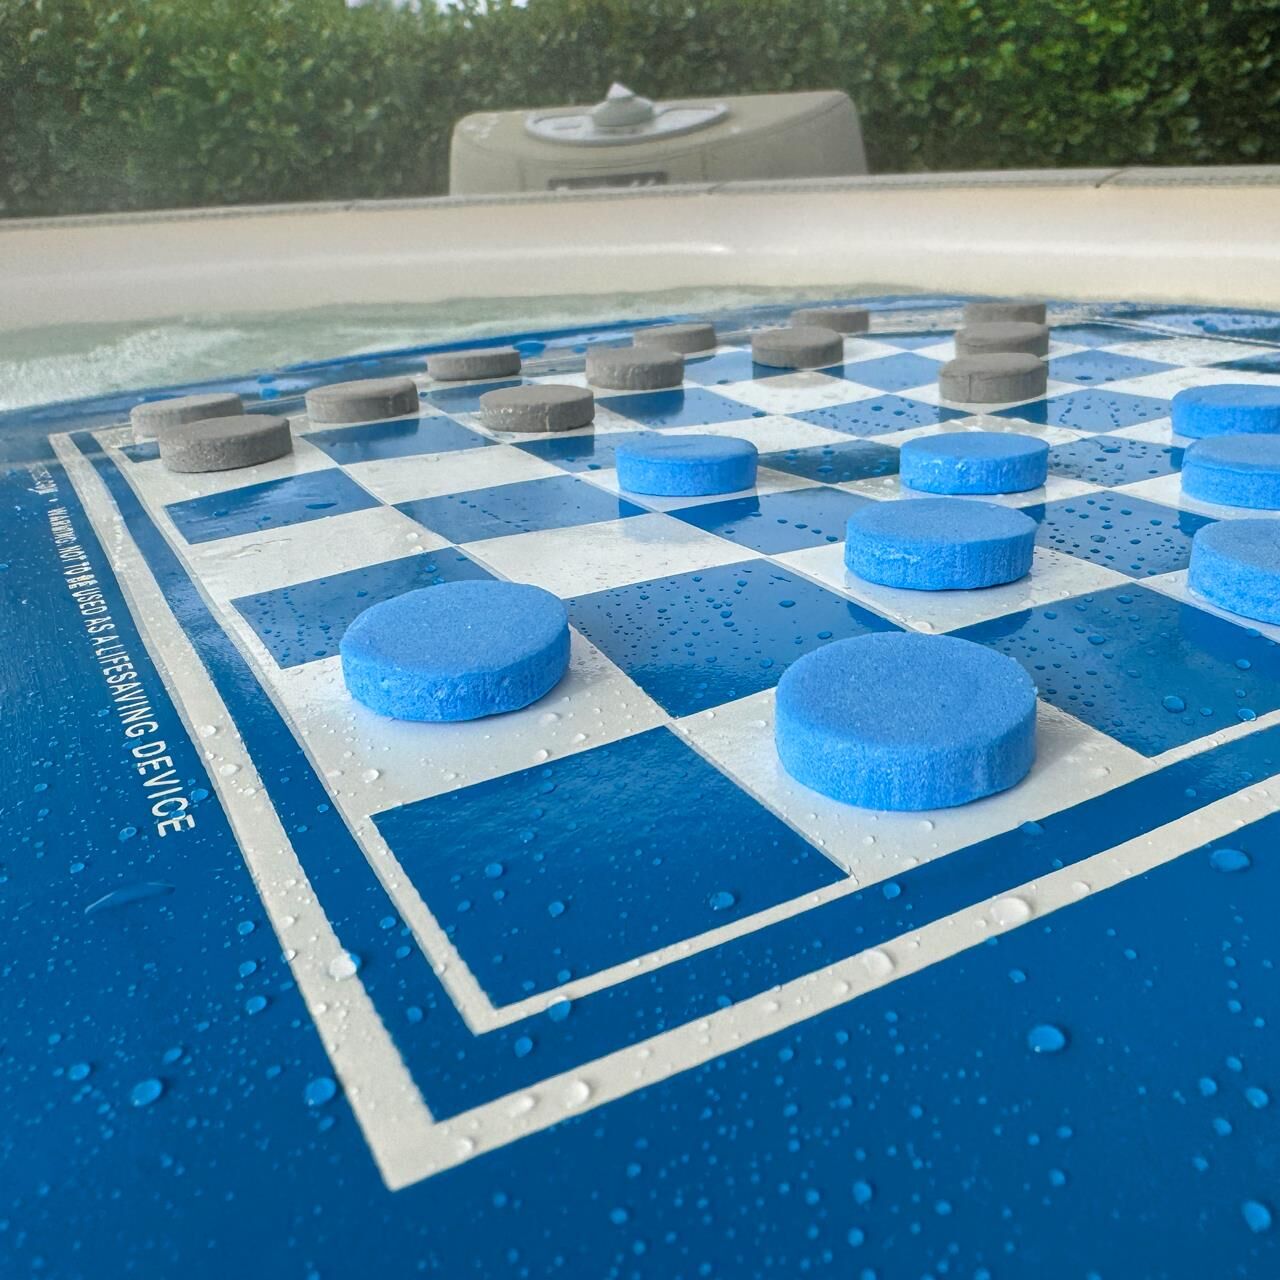 Schwimmtablett - Whirlpool-Getränkehalter - mit Spielbrett - 50 x 40 x 5 cm - blau (Schach/Dame)